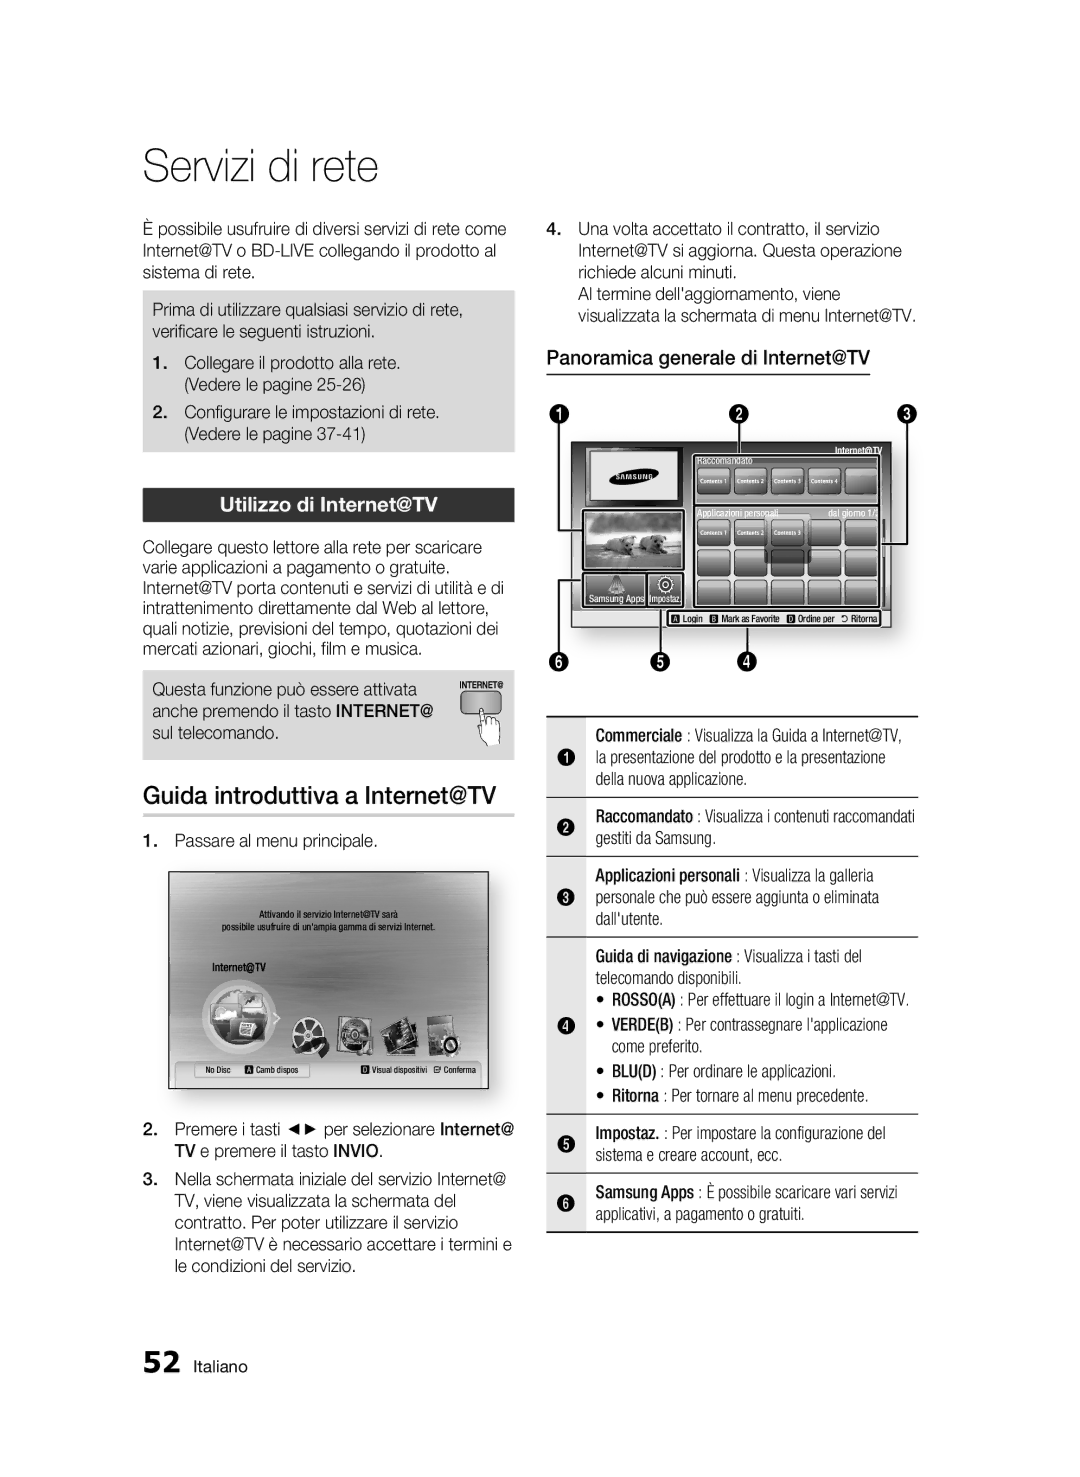 Samsung BD-C7500/XEF, BD-C7500/EDC manual Servizi di rete, Guida introduttiva a Internet@TV, Utilizzo di Internet@TV 